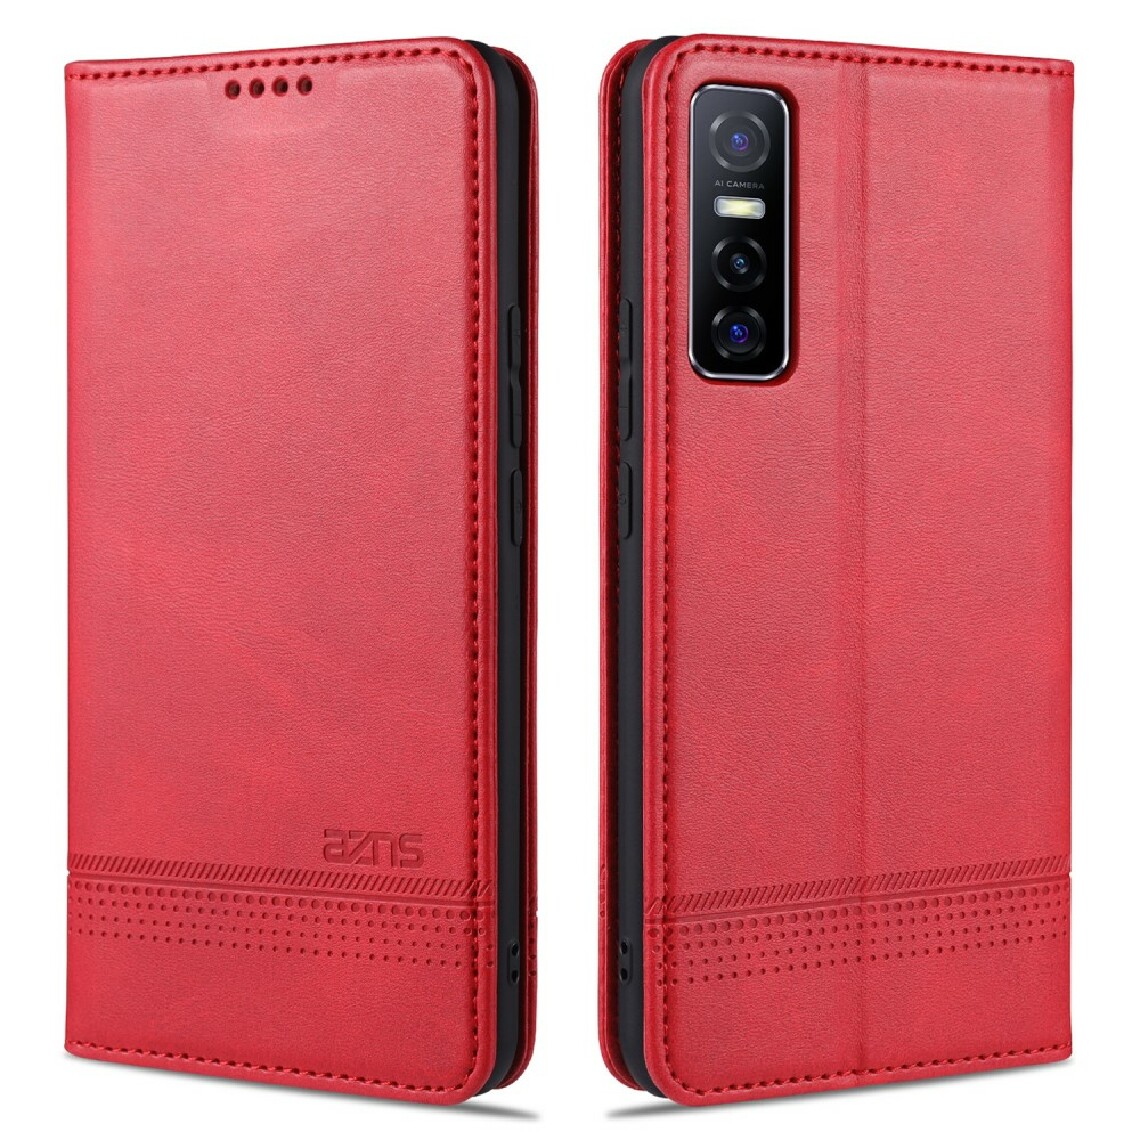 Other - Etui en PU magnétique absorbé avec porte-carte rouge pour votre Vivo Y73s - Coque, étui smartphone